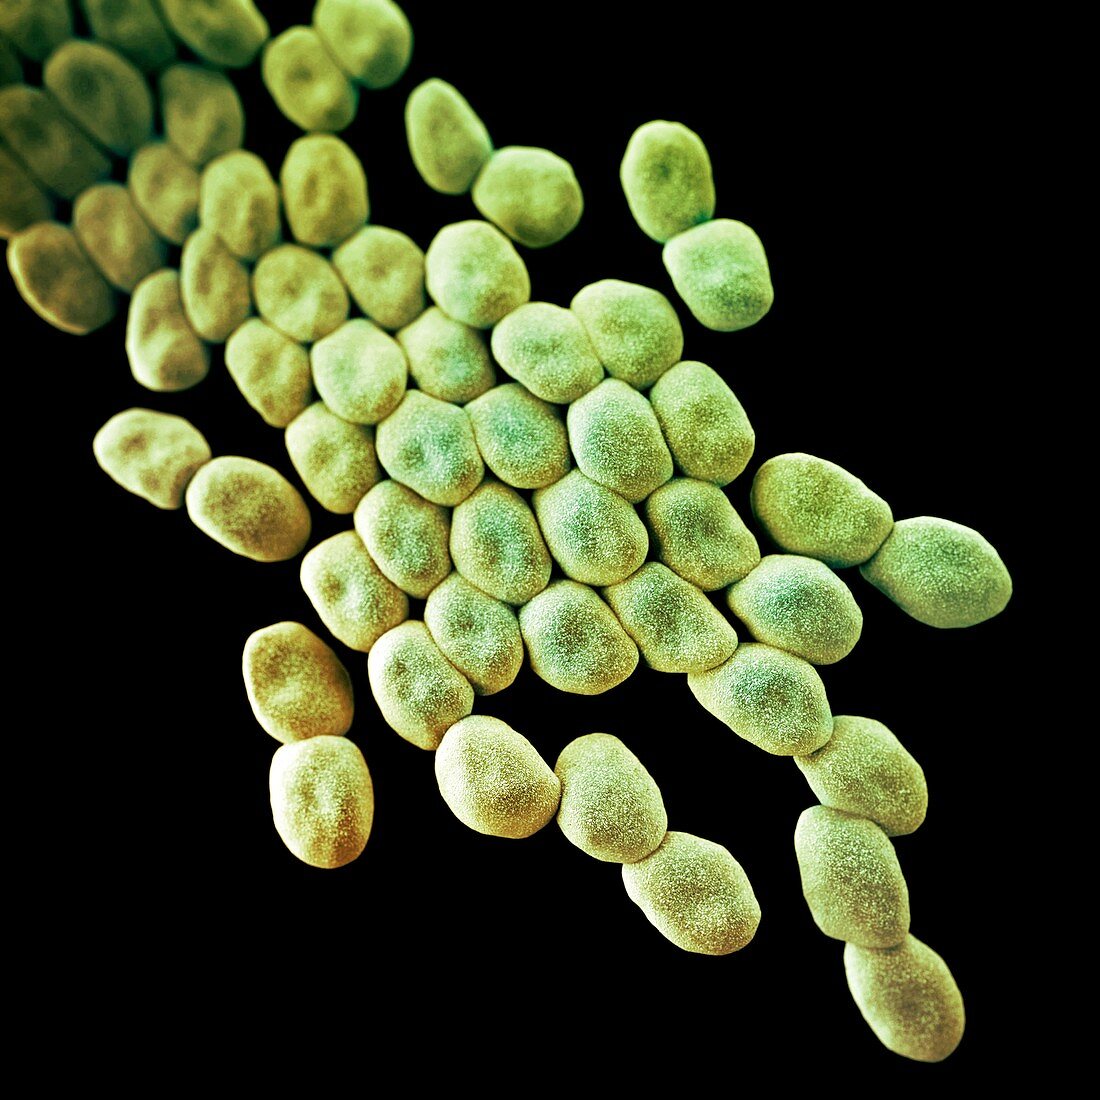 Drug-resistant Acinetobacter bacteria